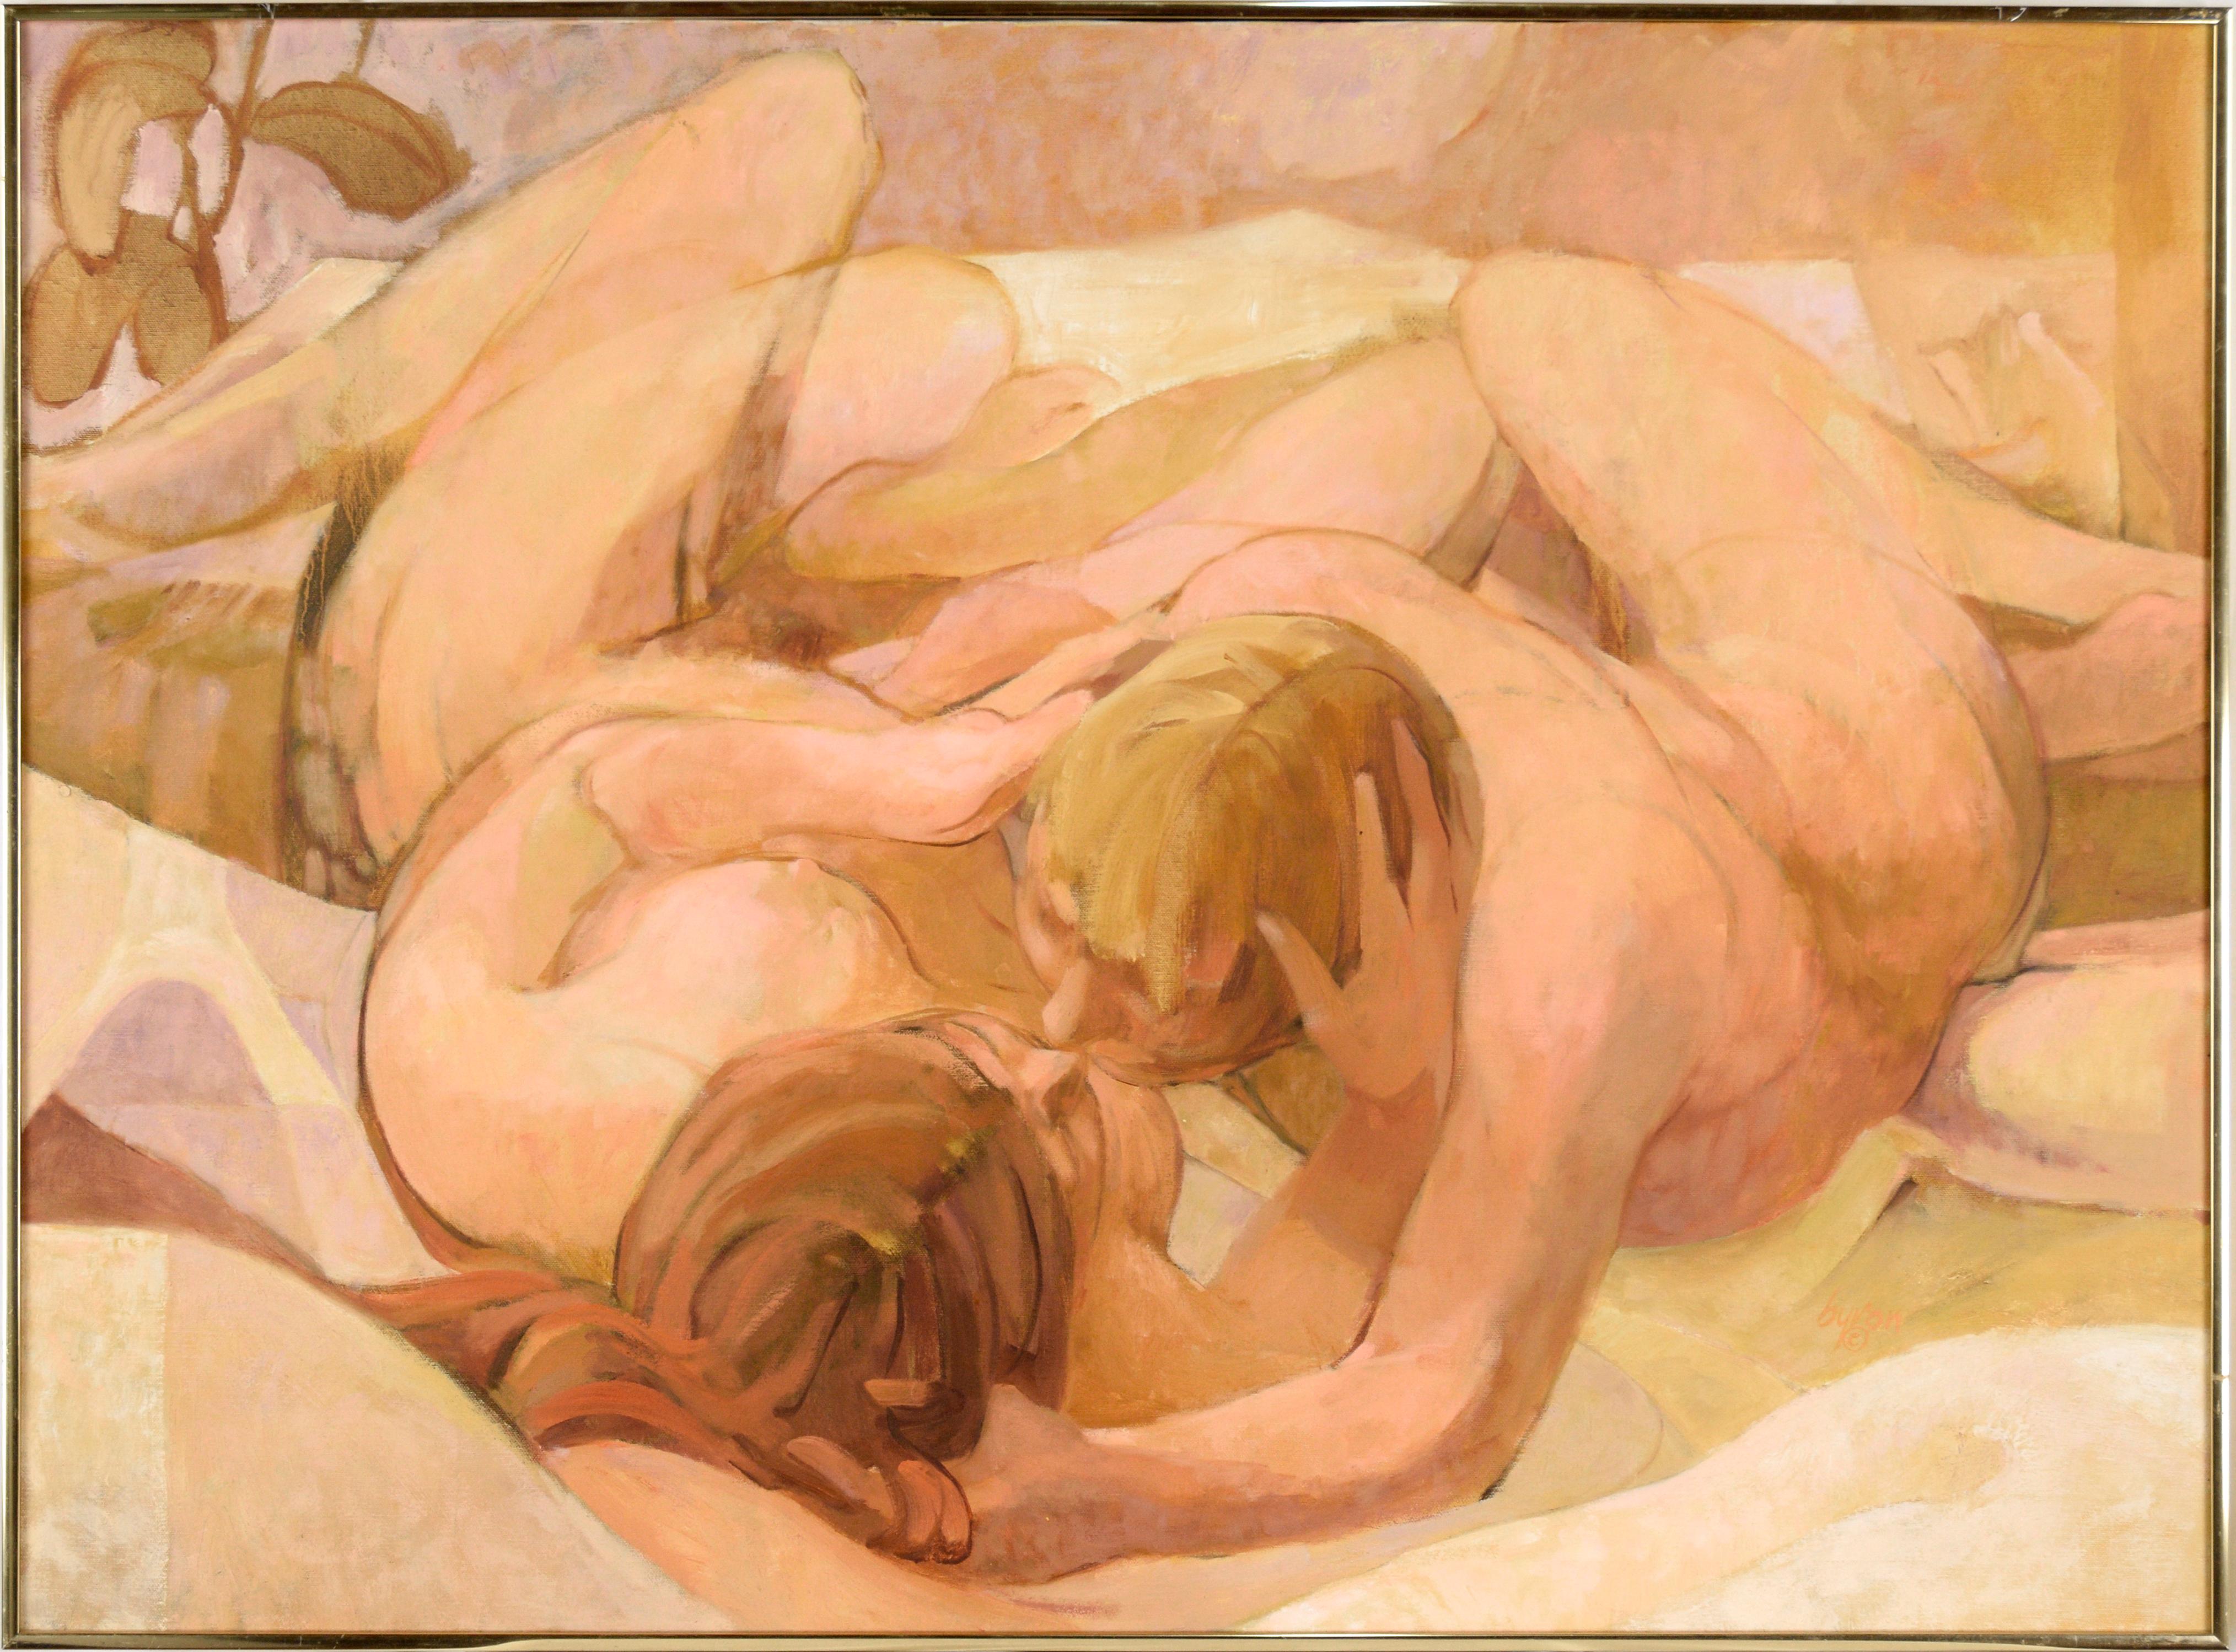 Deux nus dans un lit - Composition figurative à l'huile sur toile « Morning »